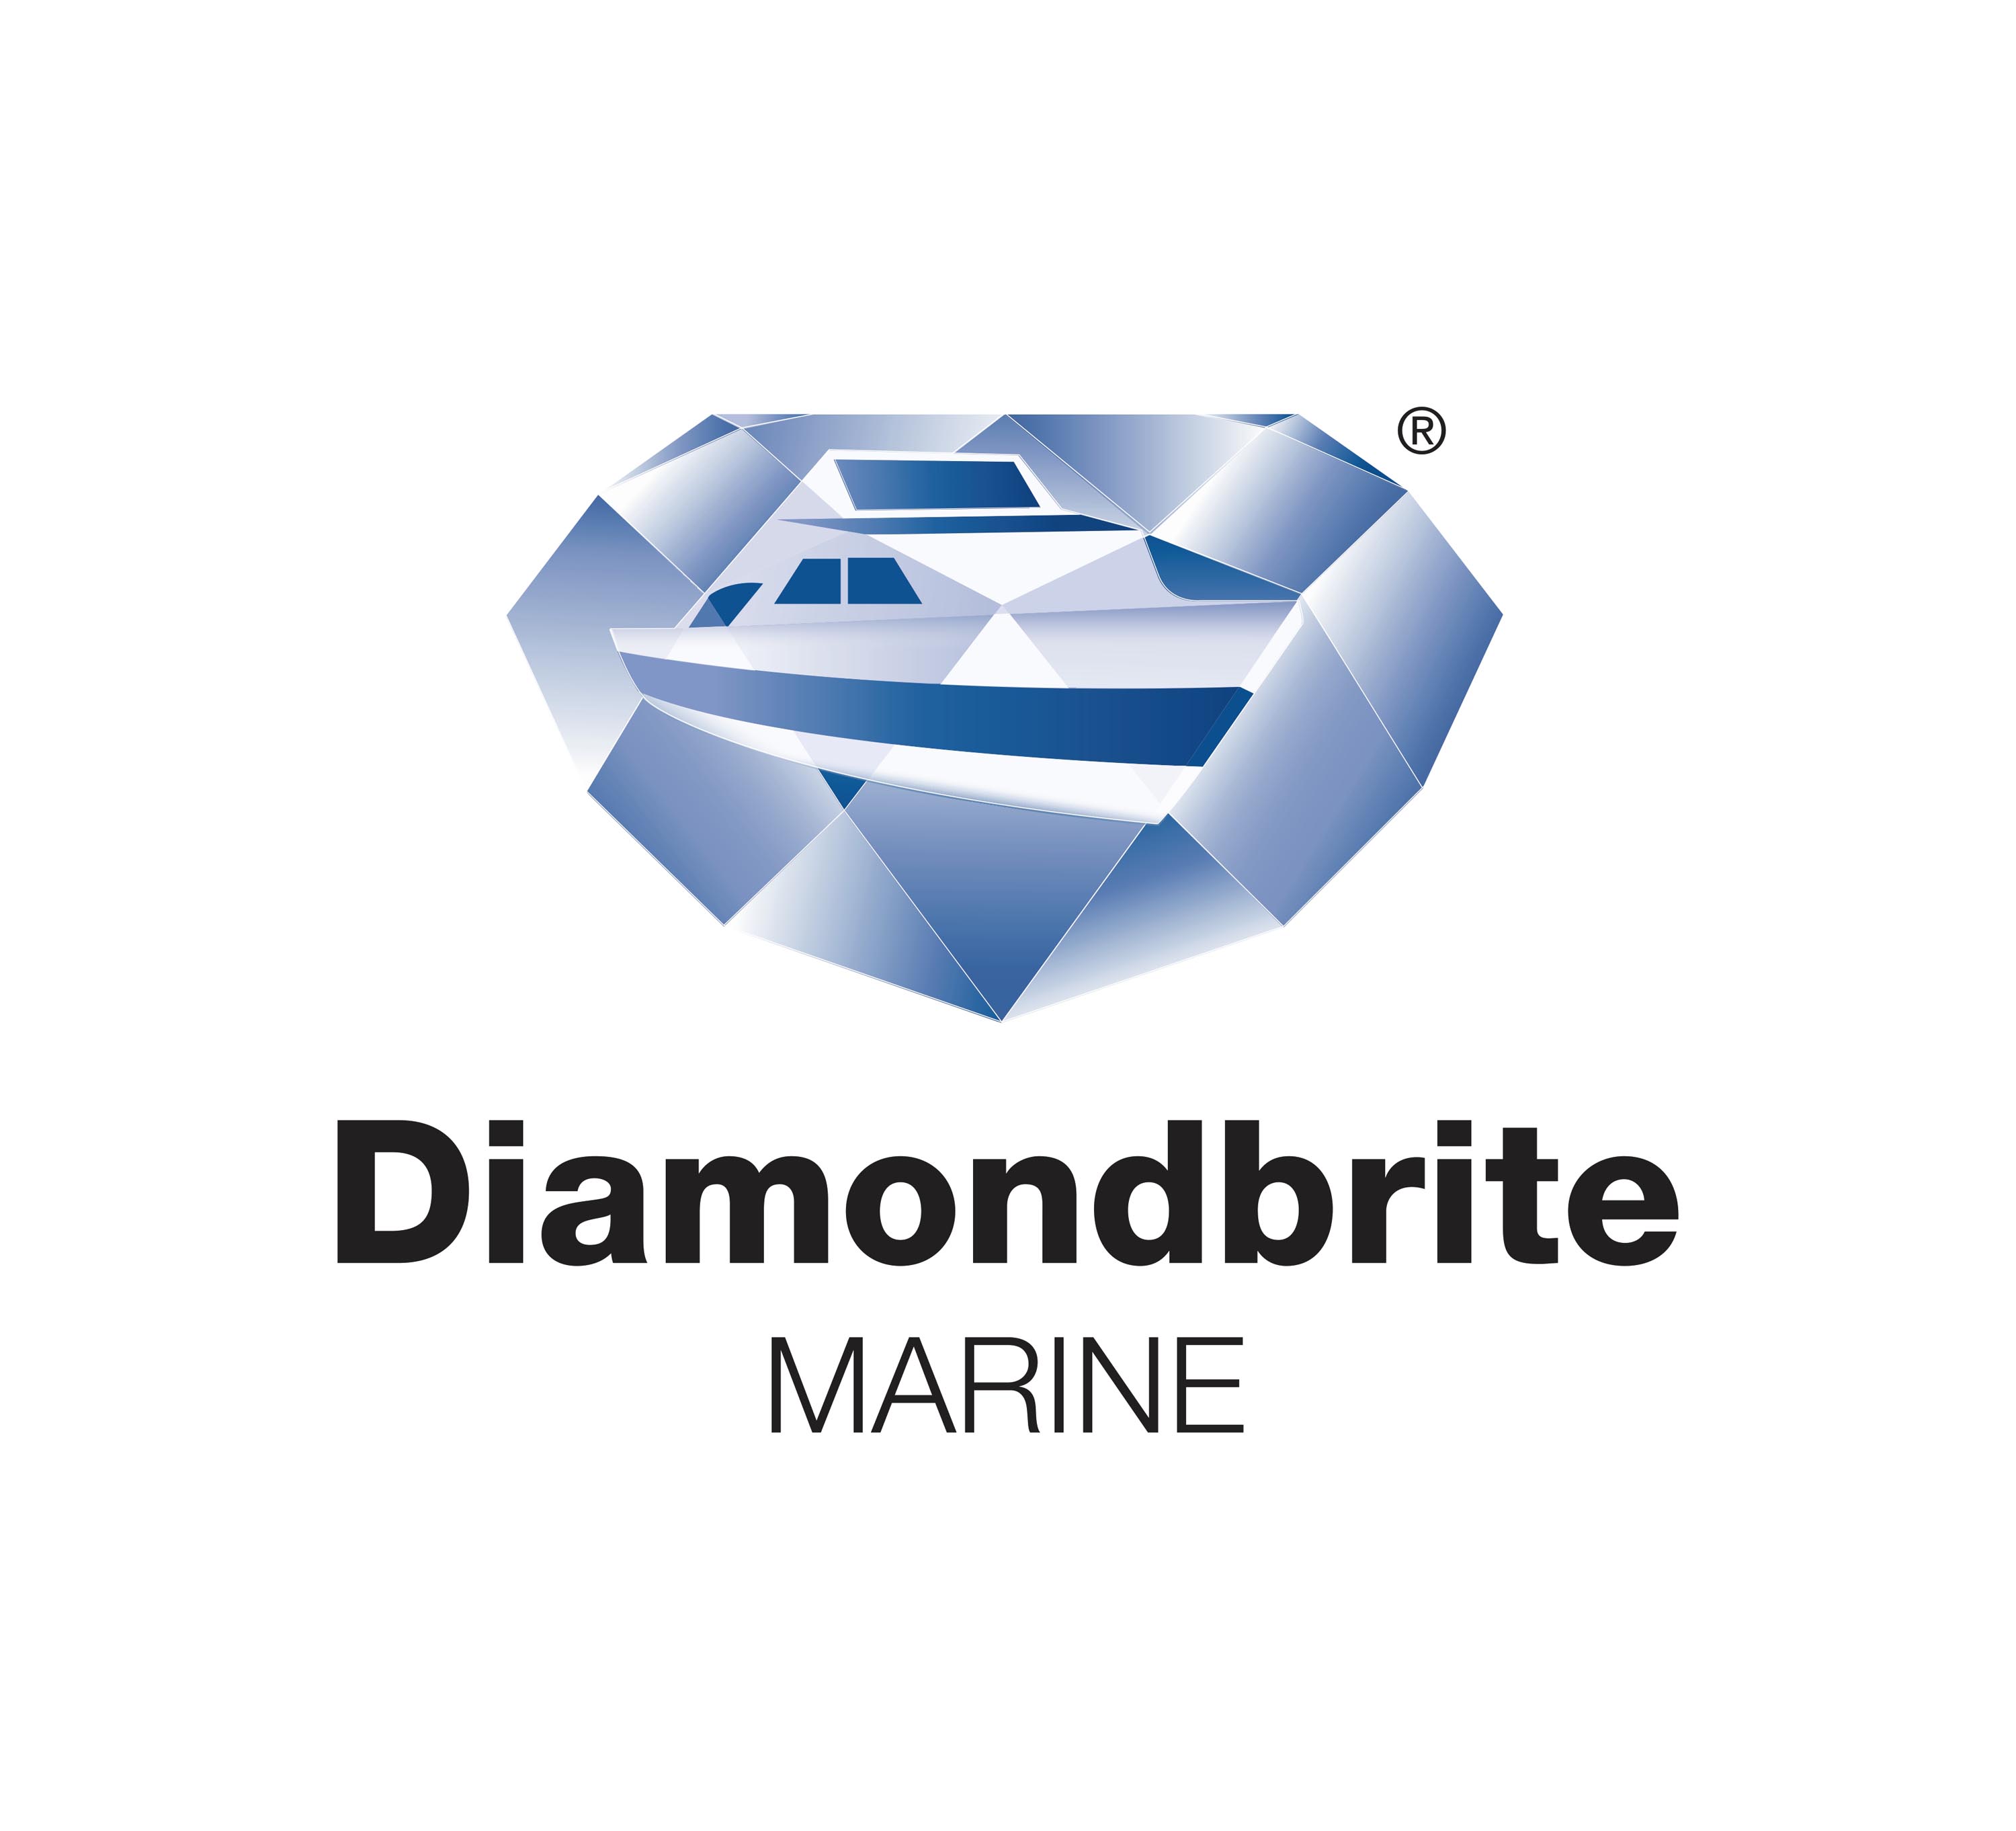 Diamondbrite_Marine.jpg